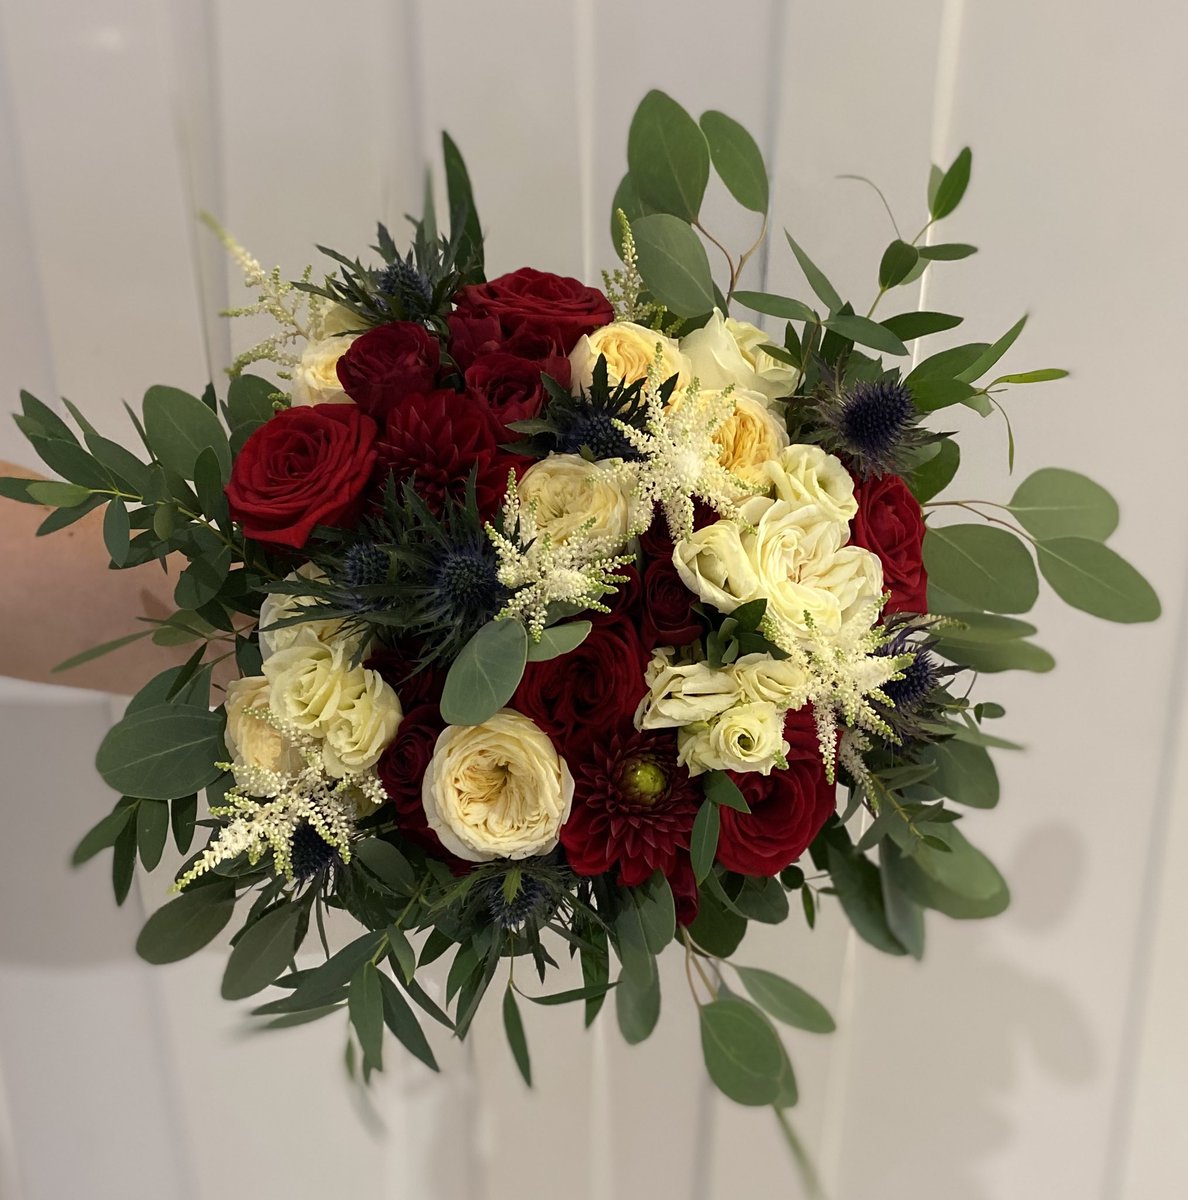 This time last week... #bride #wedding #weddingflowers #bridalhandtied #bridalflowers #flowers #roses #gardenroses #lisianthus #derbyflorist #derbyshireflorist #derbywedding #derbyshirewedding @intuDerby